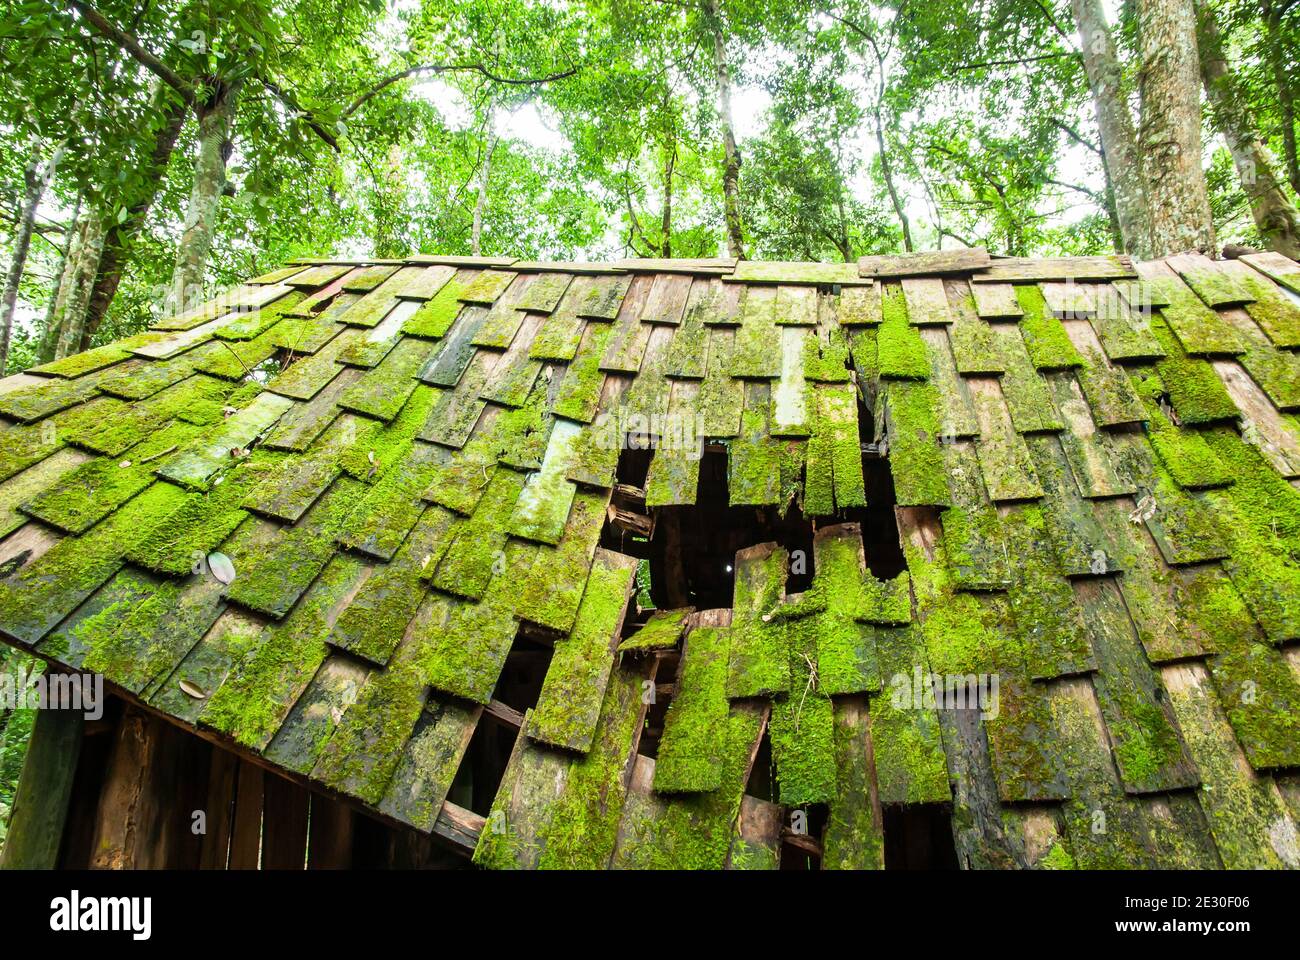 Una vecchia cabina di legno con muschio lussureggiante e lichene sul tetto di legno, vecchia cabina di legno abbandonata in una foresta tropicale in primavera. Foto Stock